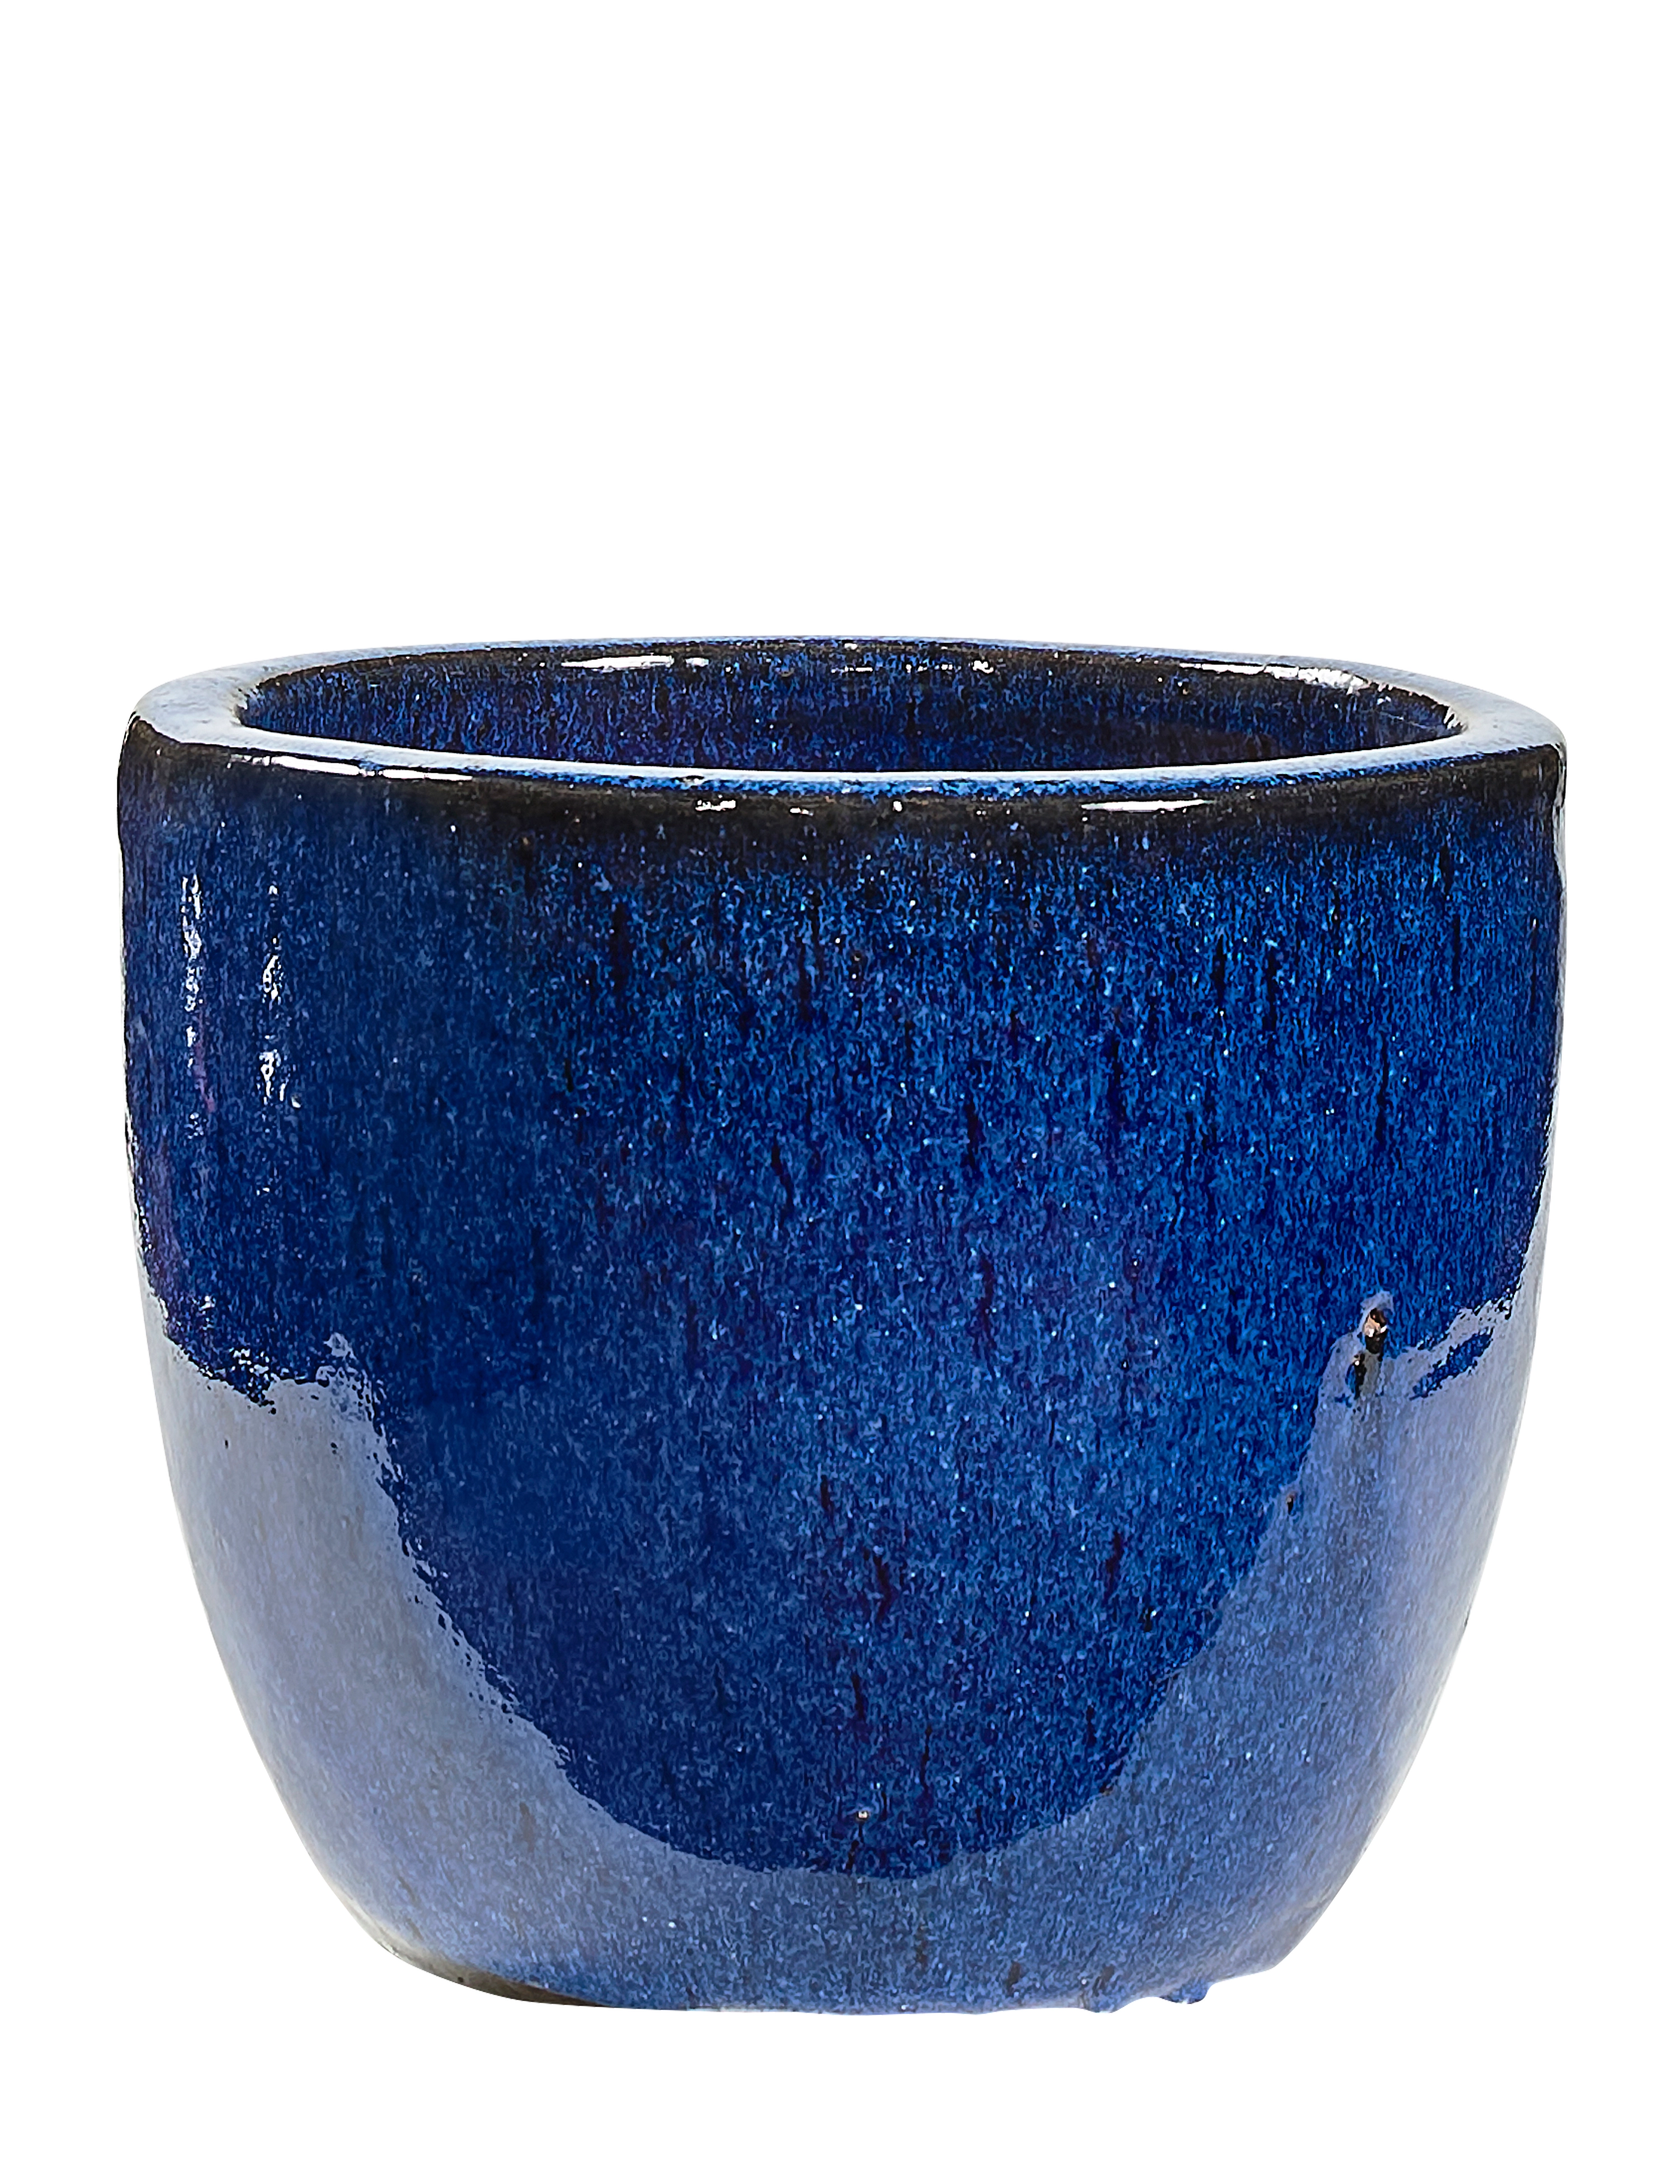 Rede G guide Broksø havekrukke Ø23xH18 cm i blå glaseret keramik